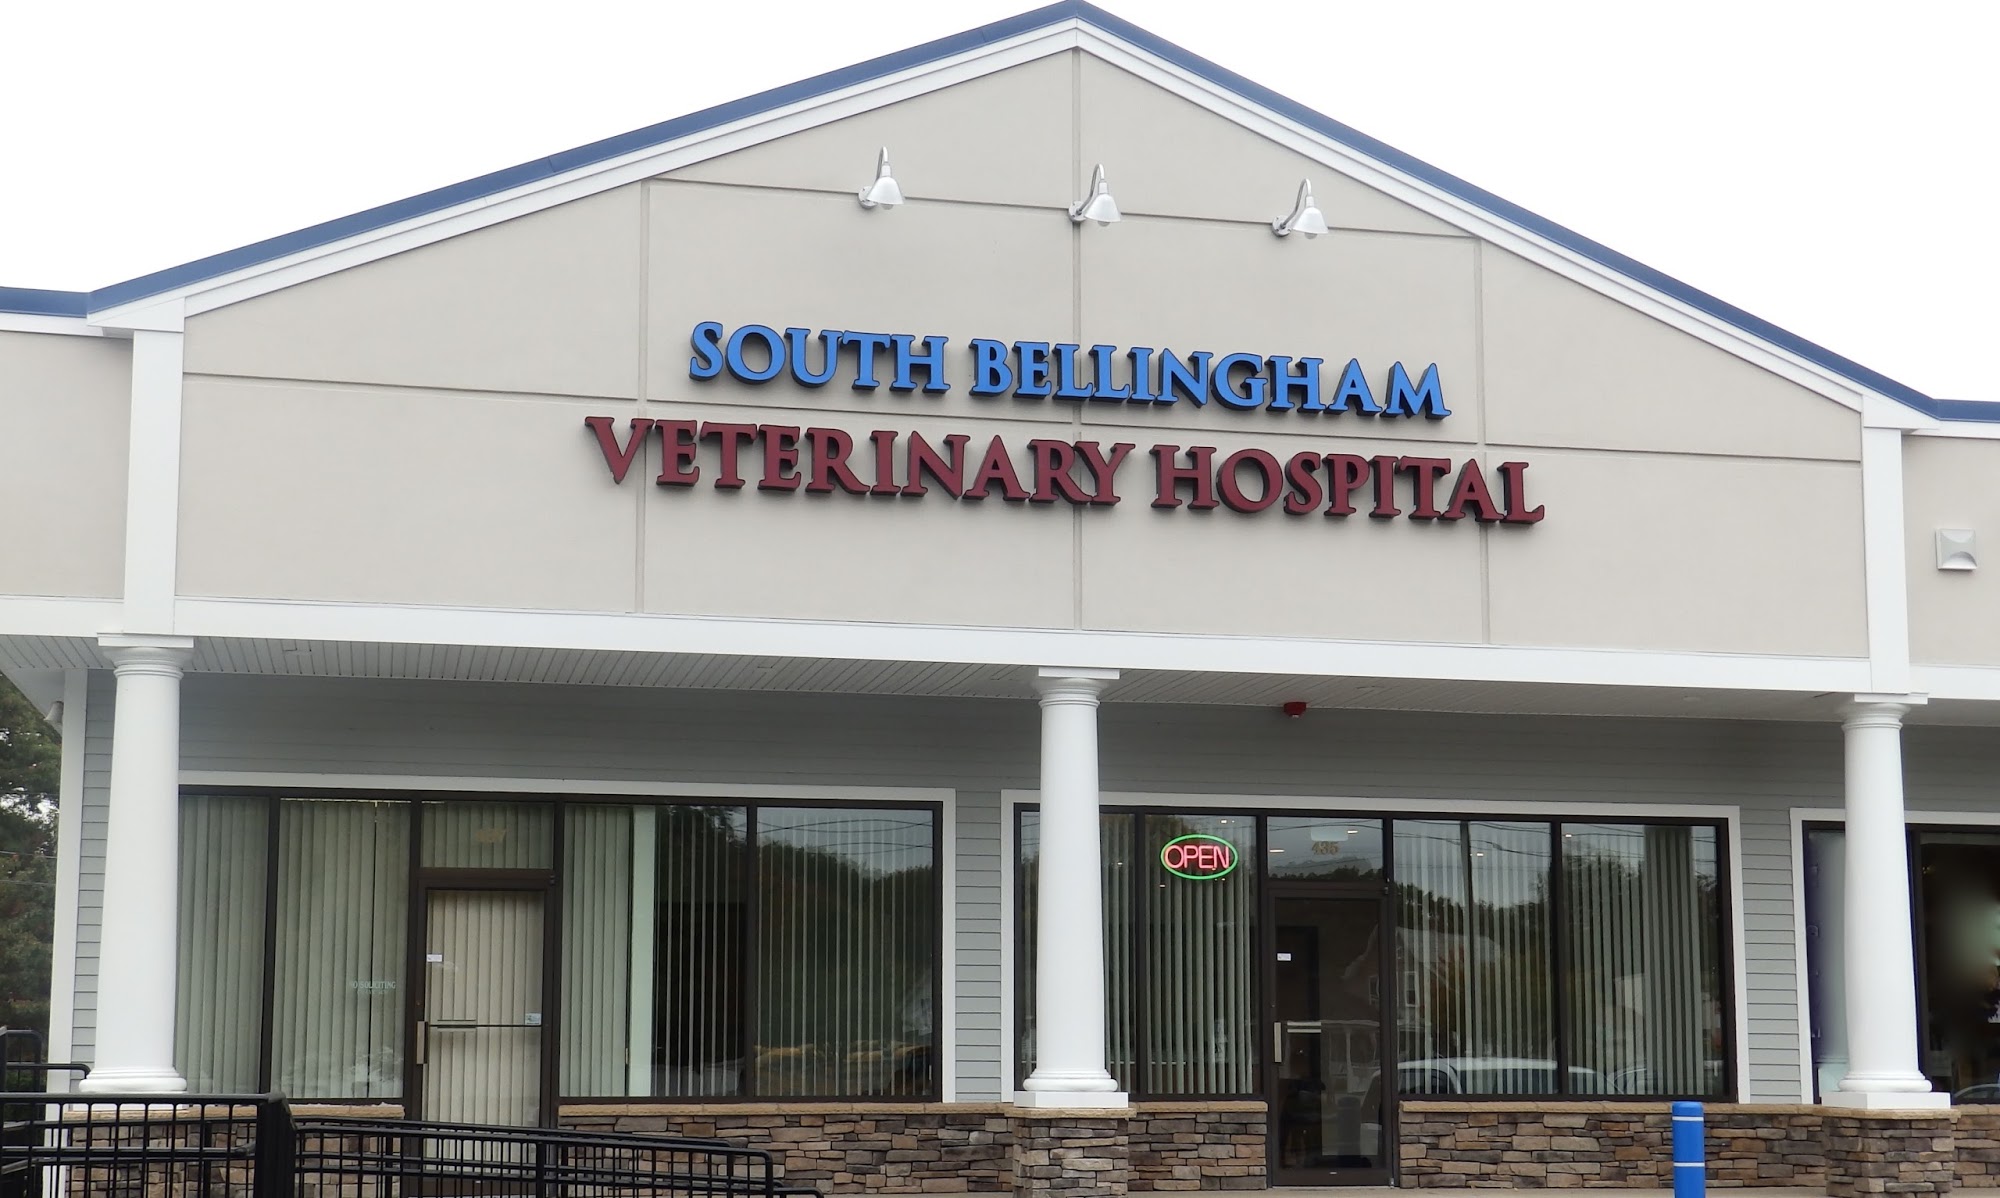 South Bellingham Veterinary Hospital